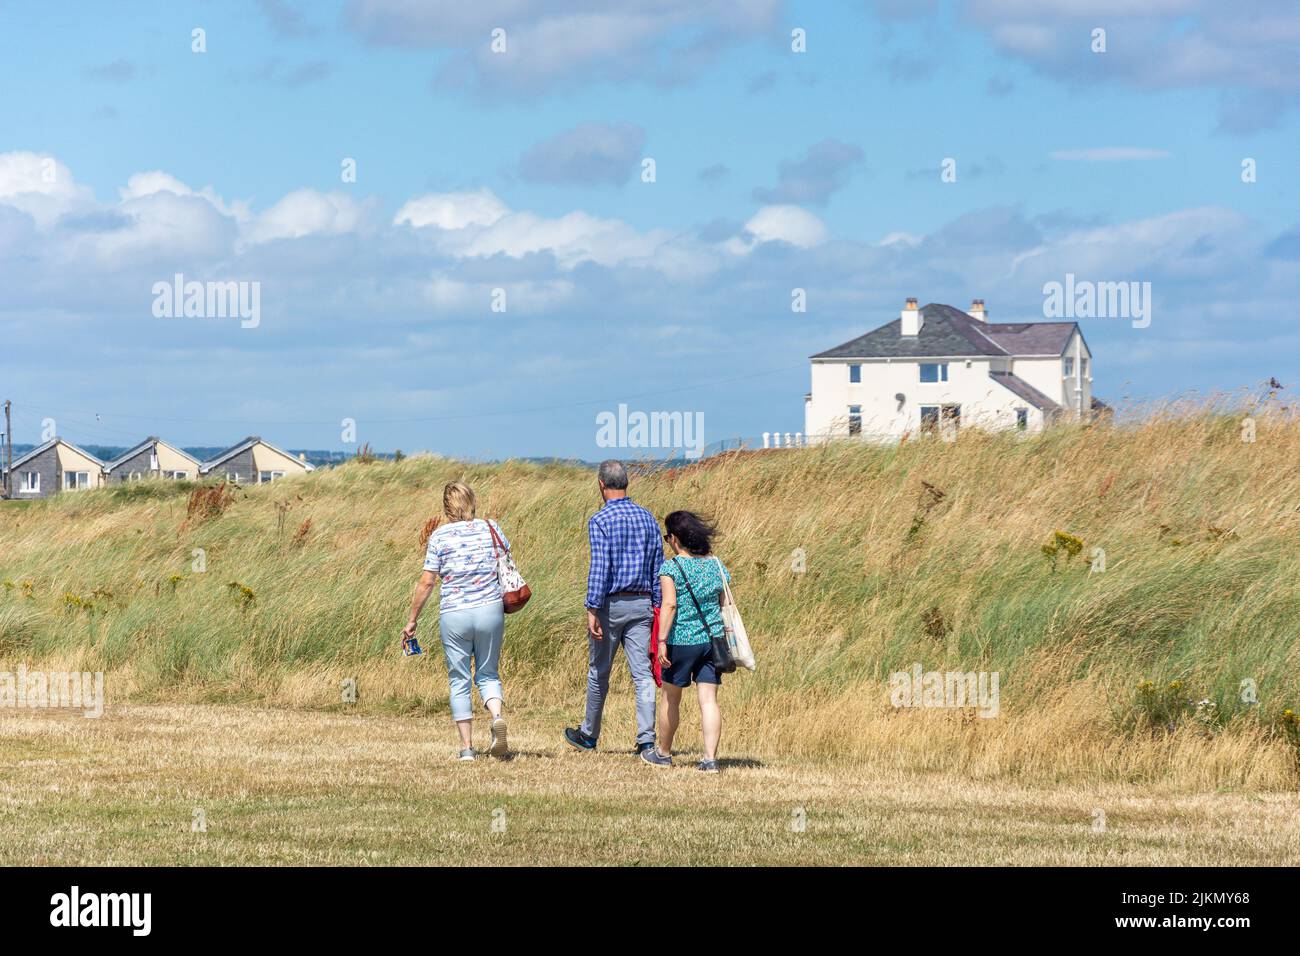 Group walking past sand dunes, Amble, Northumberland, England, United Kingdom Stock Photo